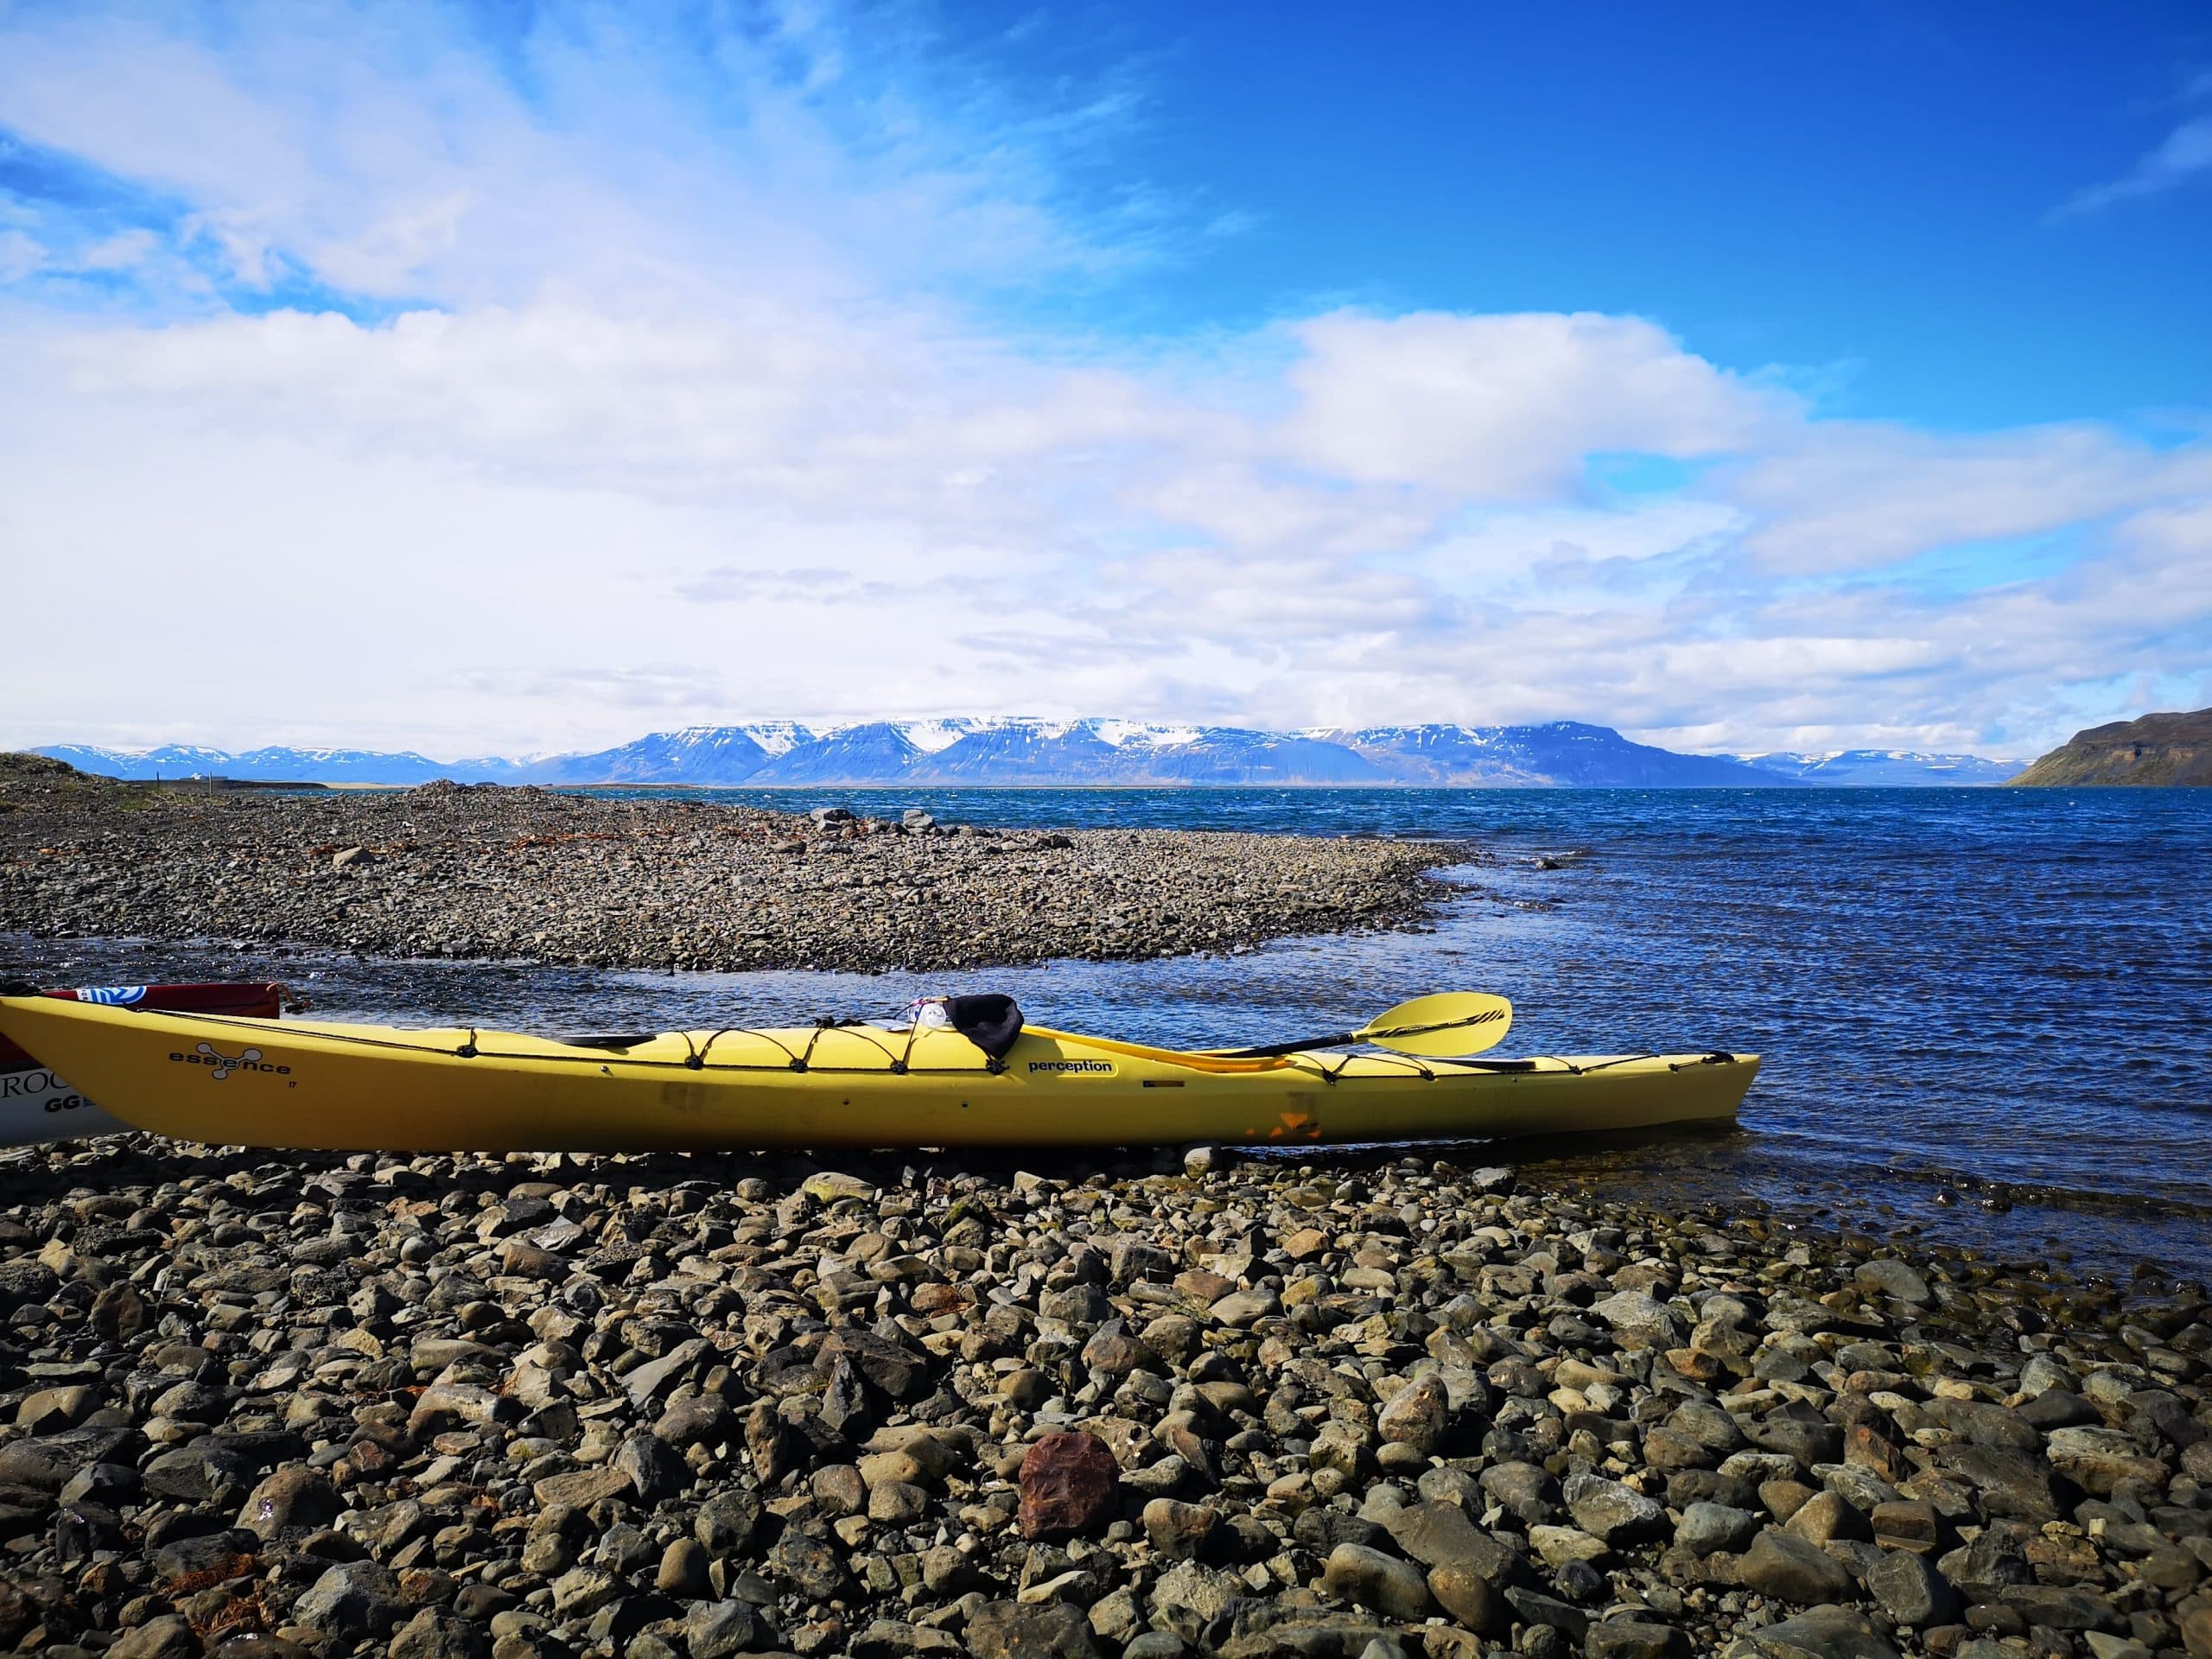 Vue d'un kayak sur une plage, les montagnes du nord de l'Islande en arrière-plan.